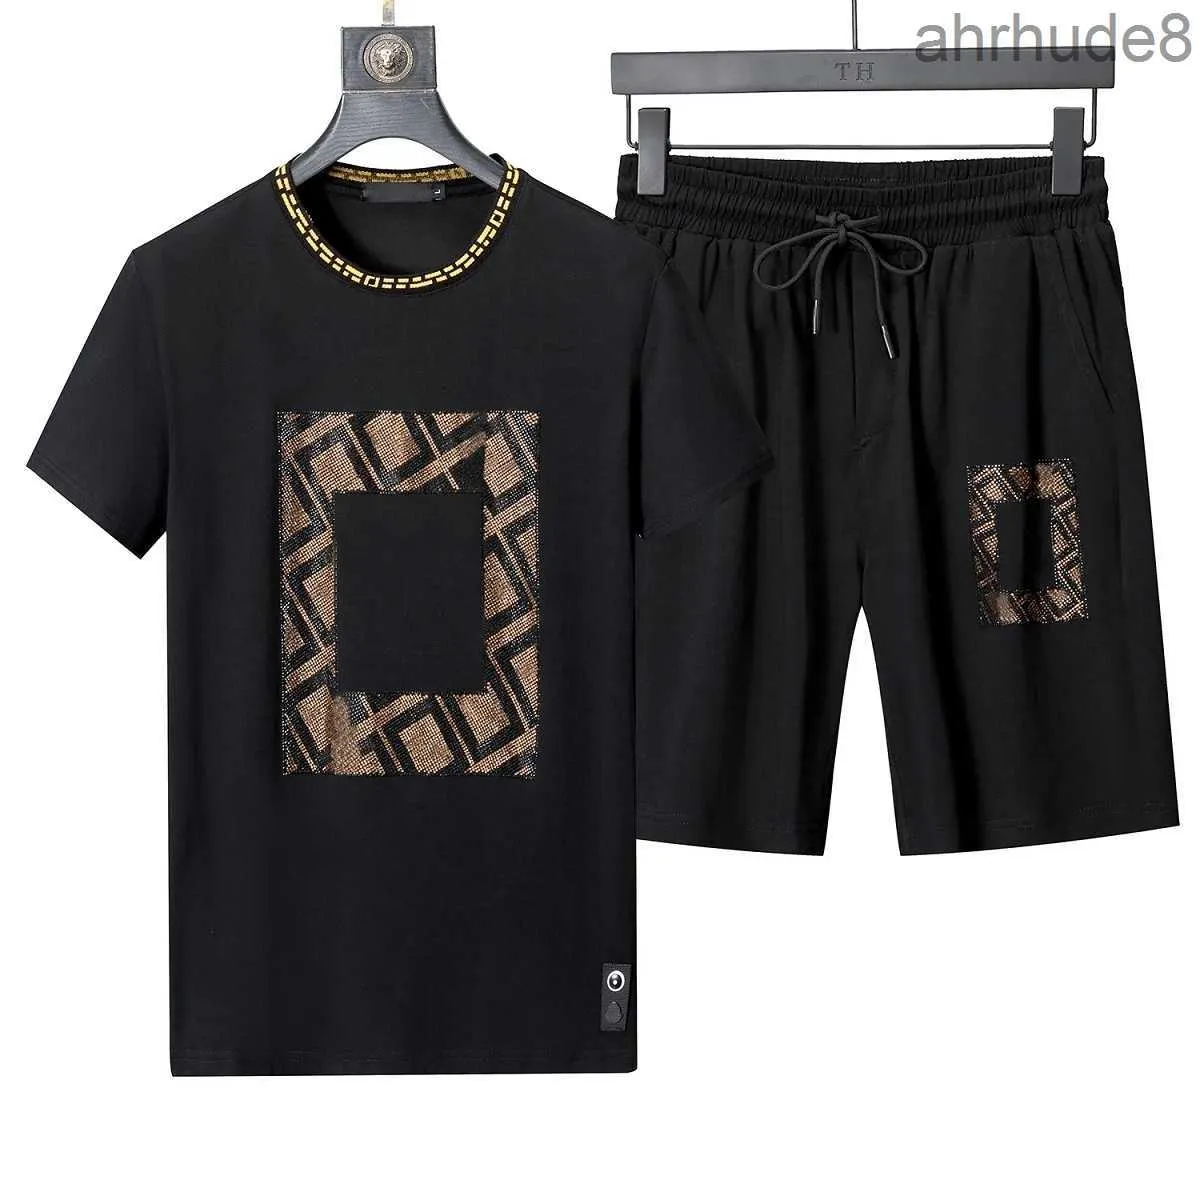 Mode été hommes survêtements ensemble jogging haute qualité t-shirts pantalons 2 pièces tenue de ville costume rue hip hop vêtements décontractés sport WZP5